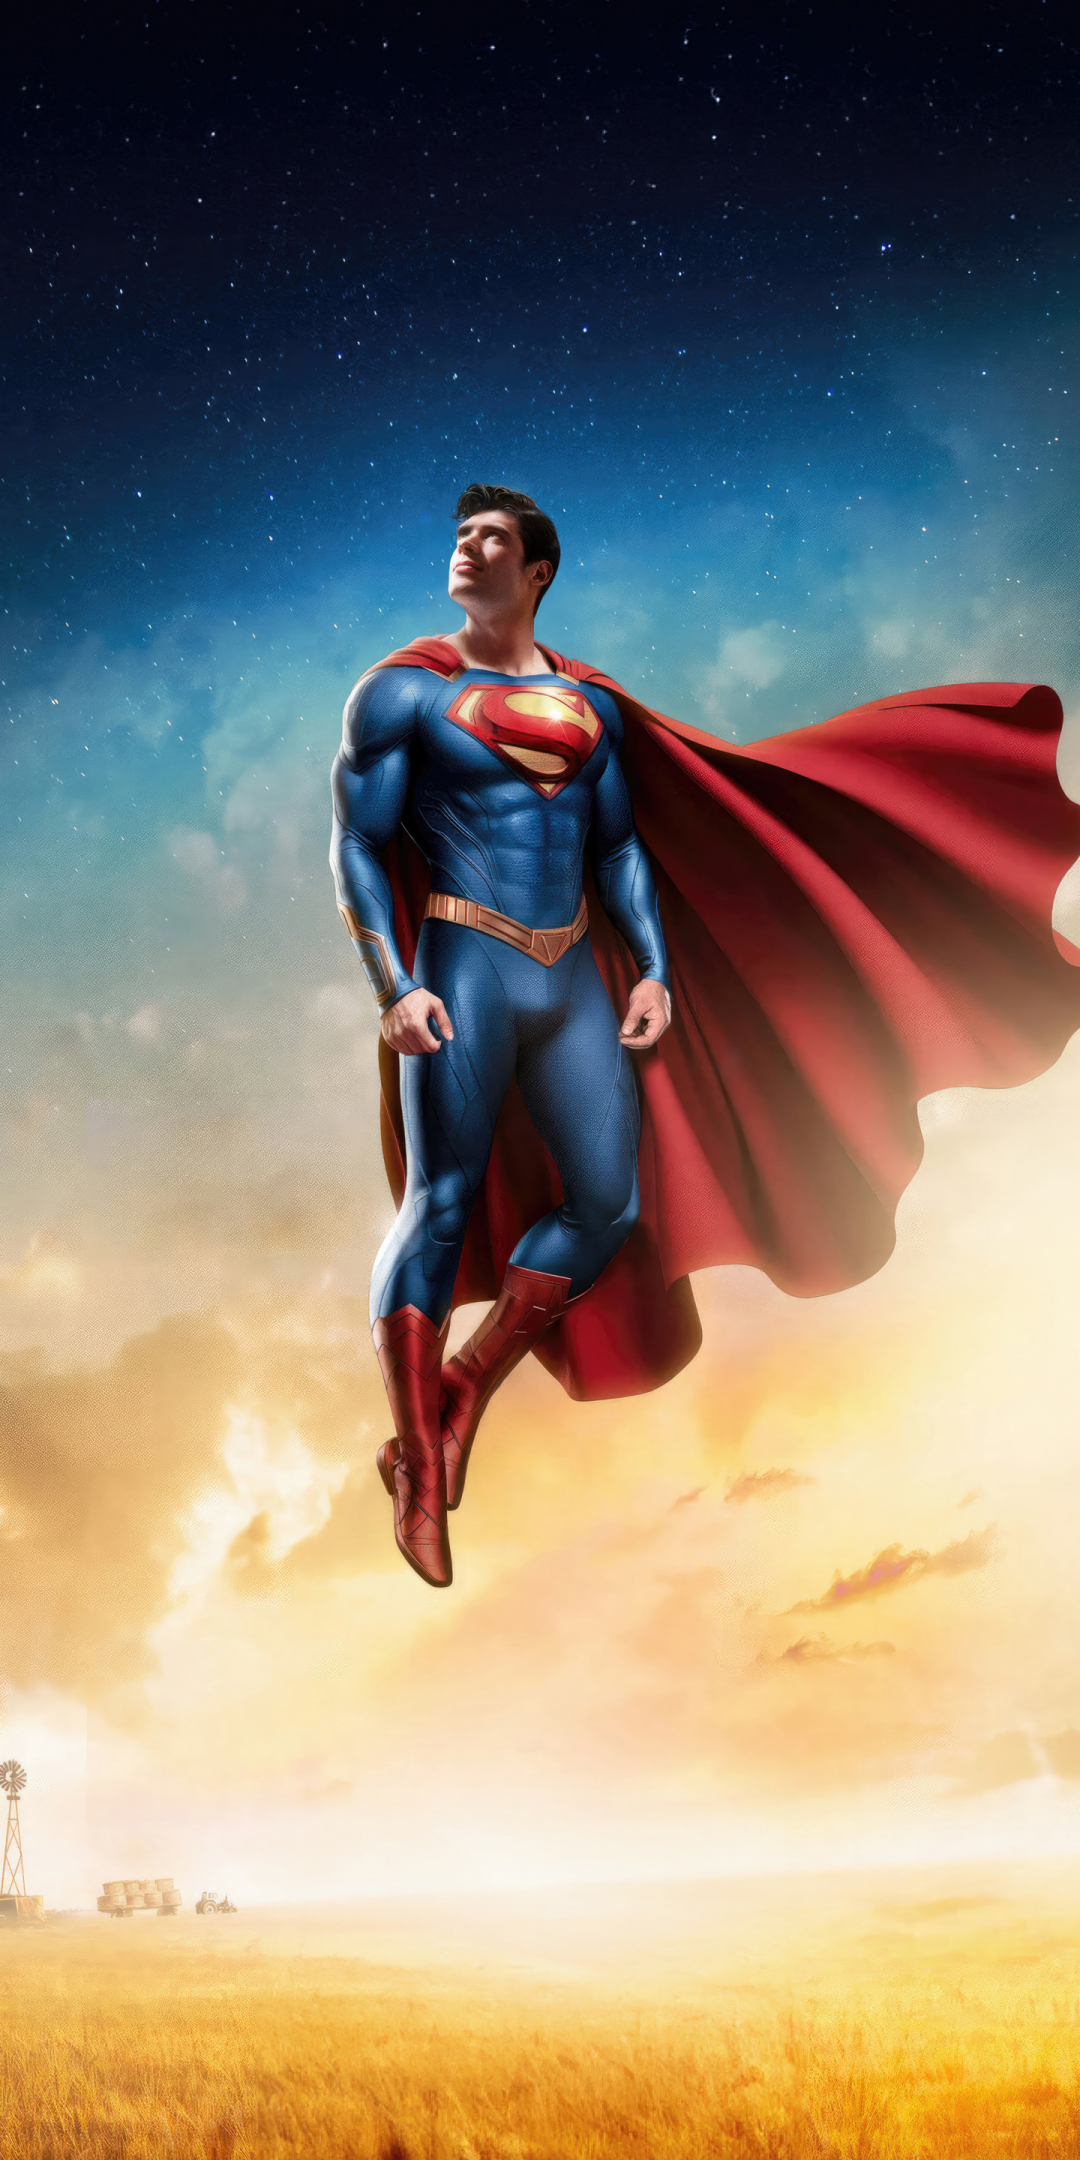 Superman's legacy, flight over the farm, fan art, 1080x2160 wallpaper